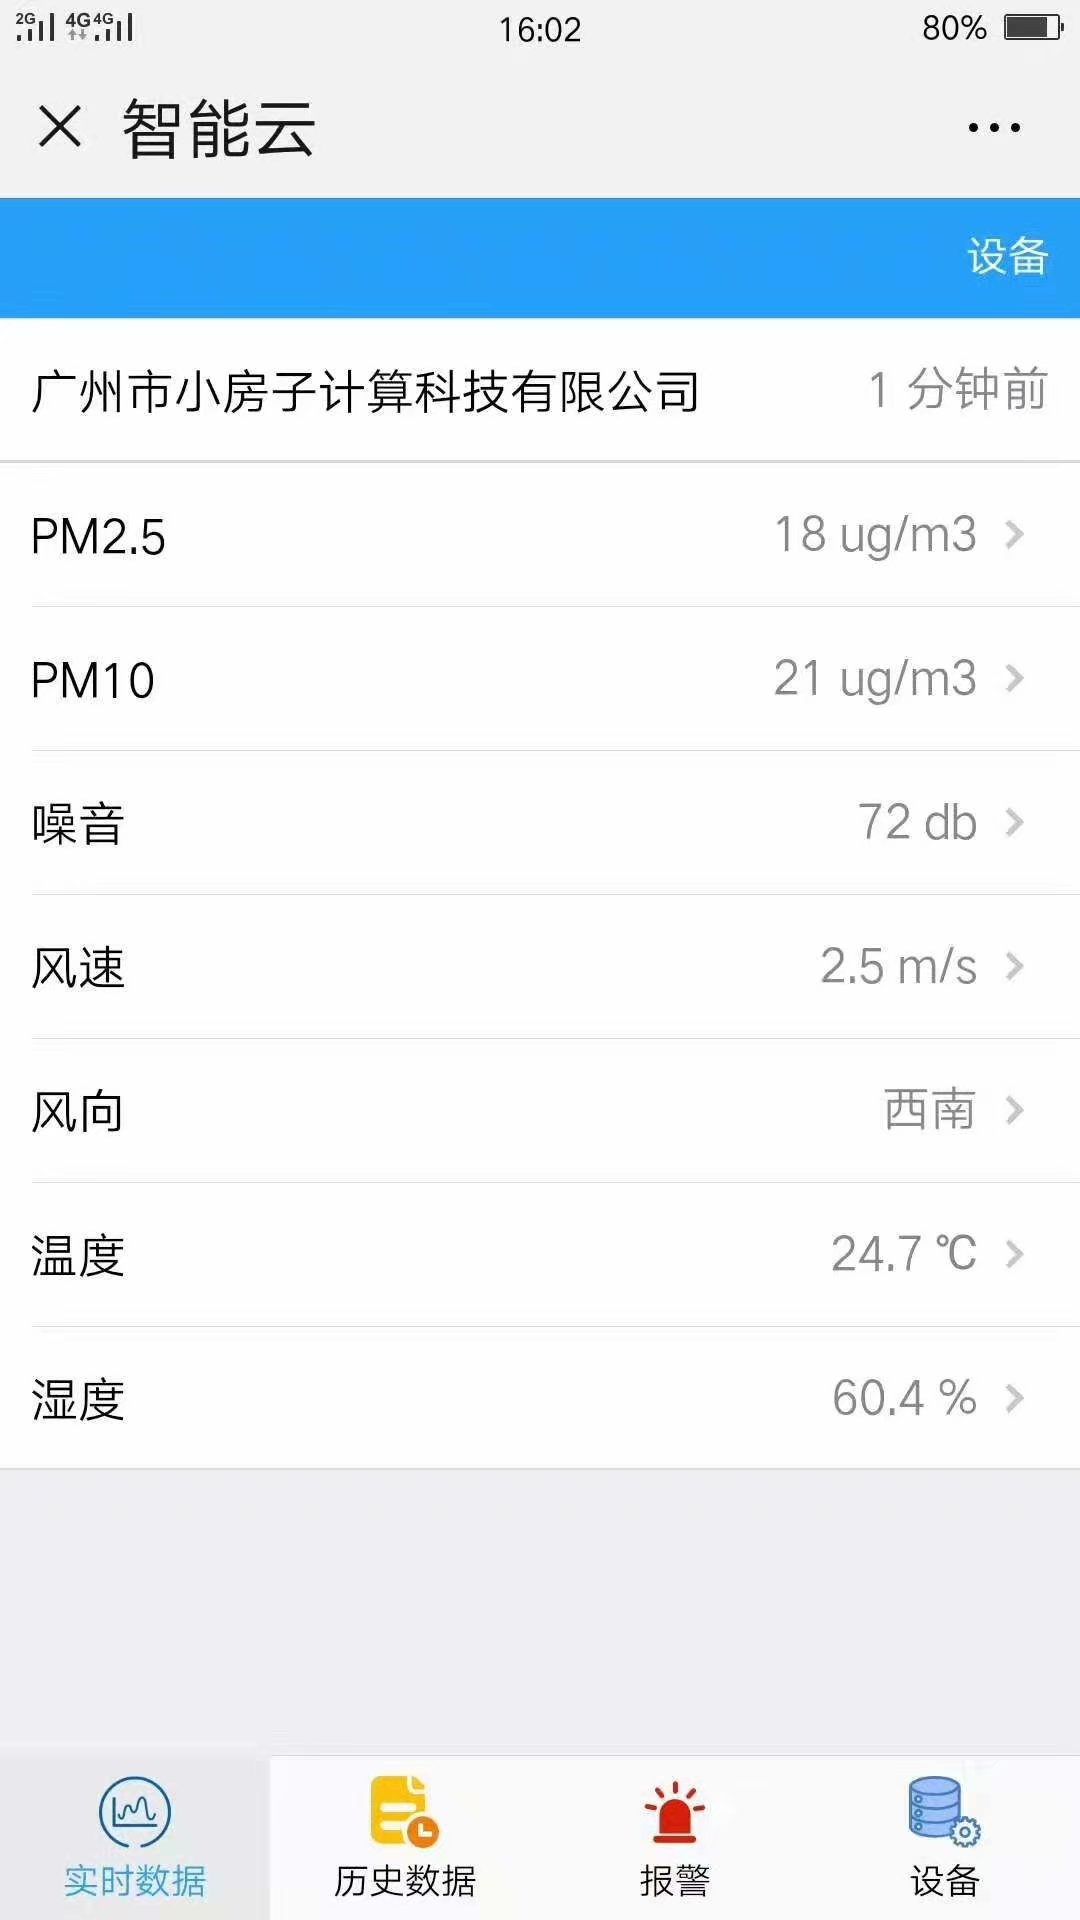 扬尘监测仪PM2.5检测系统碧如蓝厂家